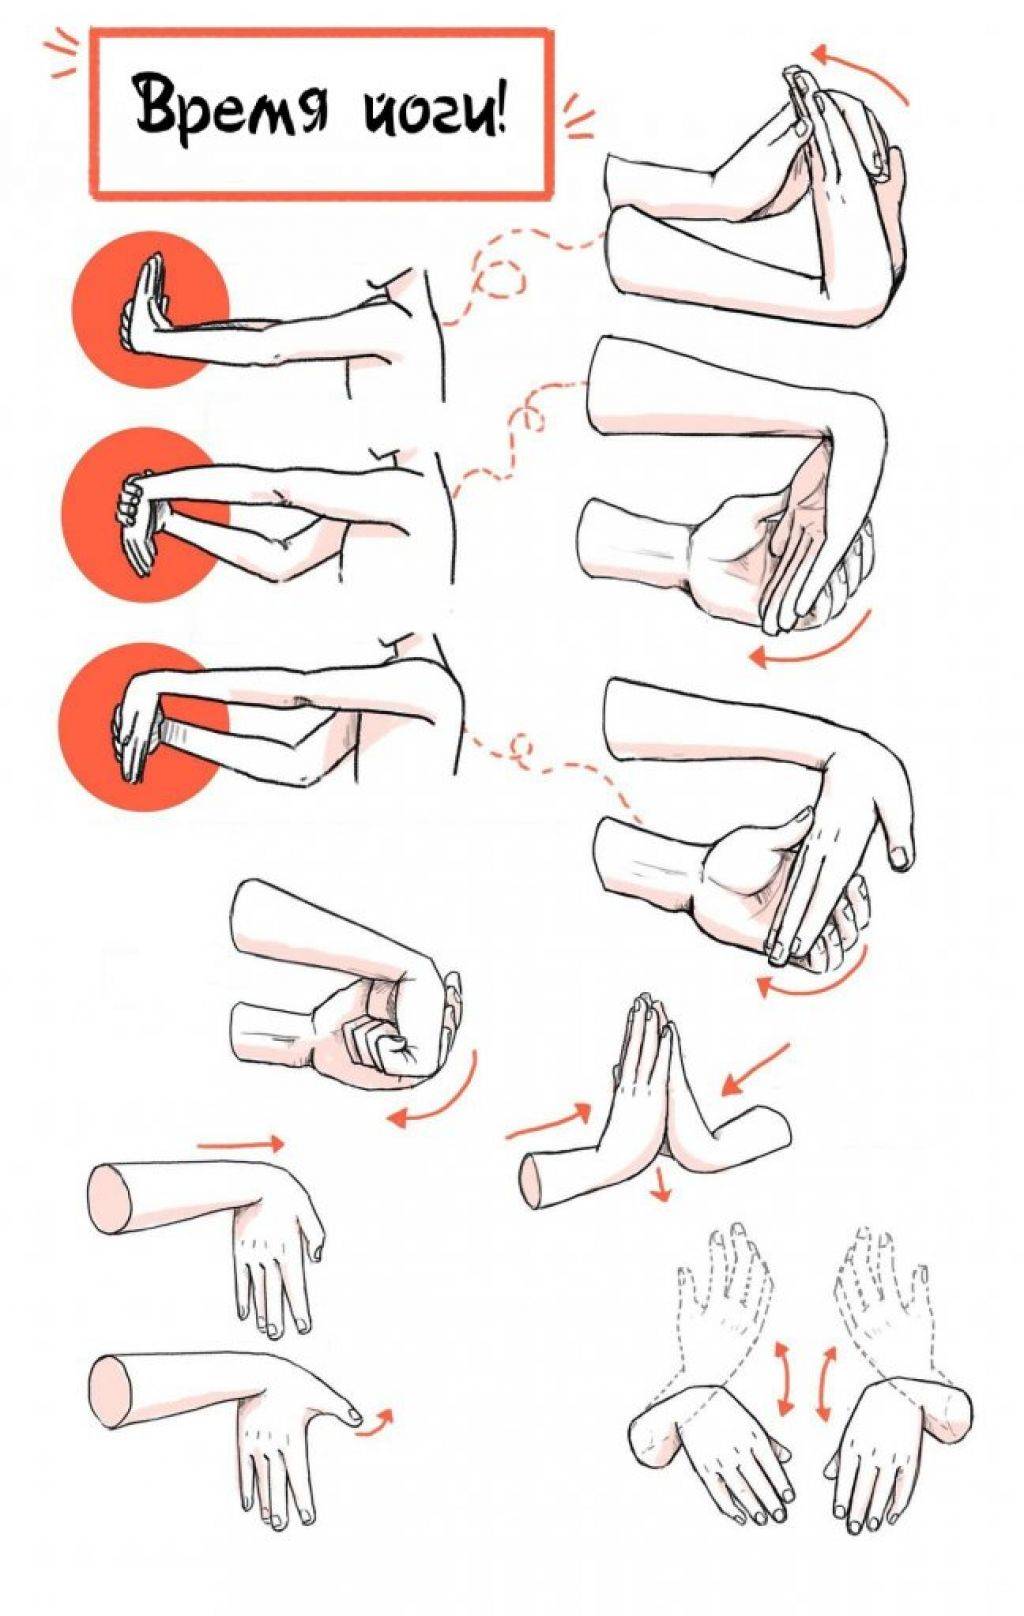 Развить кисти рук. Упражнения, растяжки суставов кистей рук.. Как укрепить мышцы кисти. Упражнения для укрепления пальцев рук и кистей. Укрепление запястий упражнения.